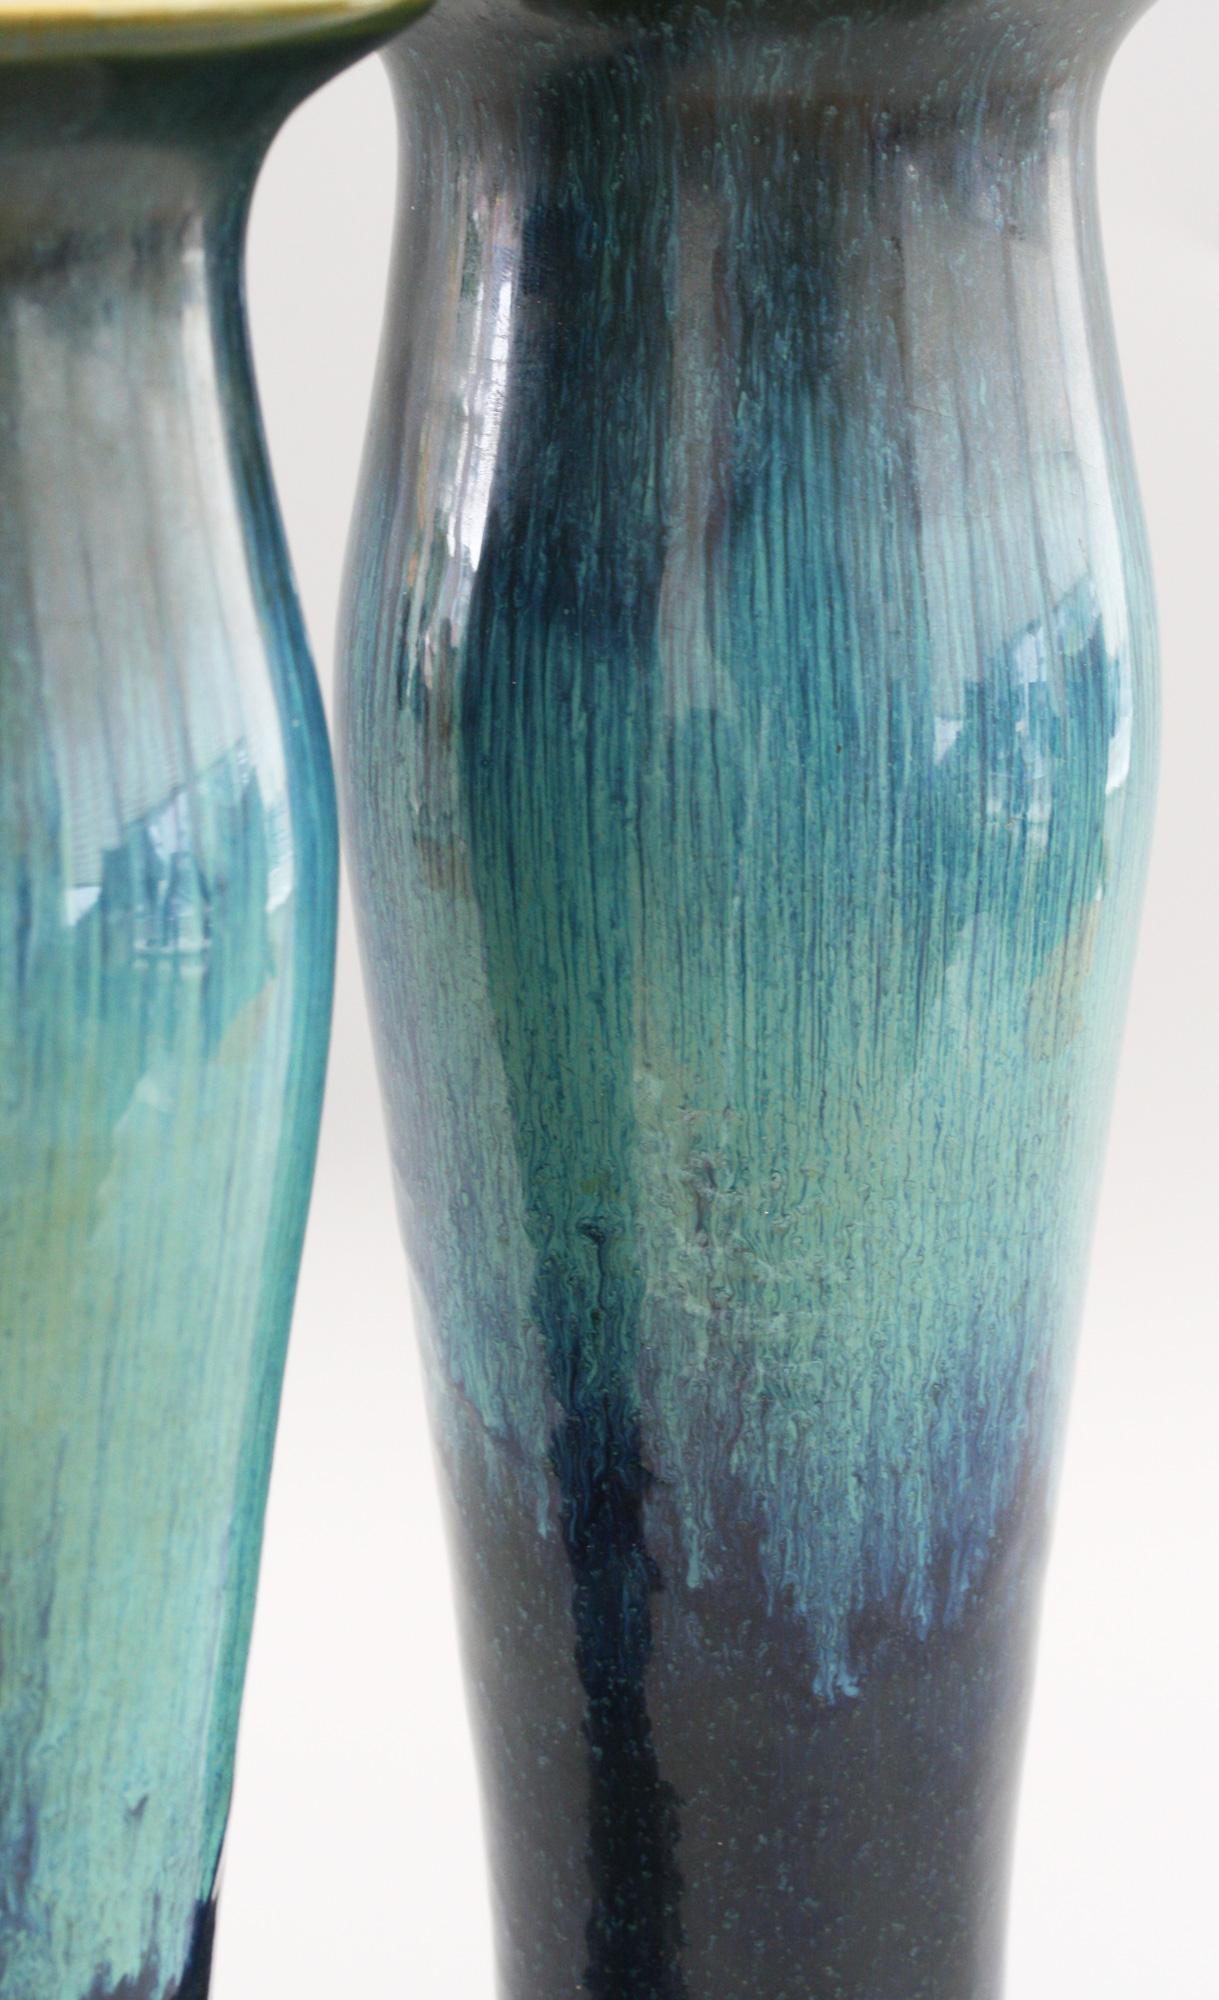 Ein außergewöhnliches Paar tulpenförmiger Jugendstil-Keramikvasen mit blauen Glasurstreifen aus der Zeit zwischen 1909 und 1922. Die Vasen stehen auf breiten, abgerundeten, leicht gewölbten Füßen, die hohen, schlanken, tulpenförmigen Körper haben